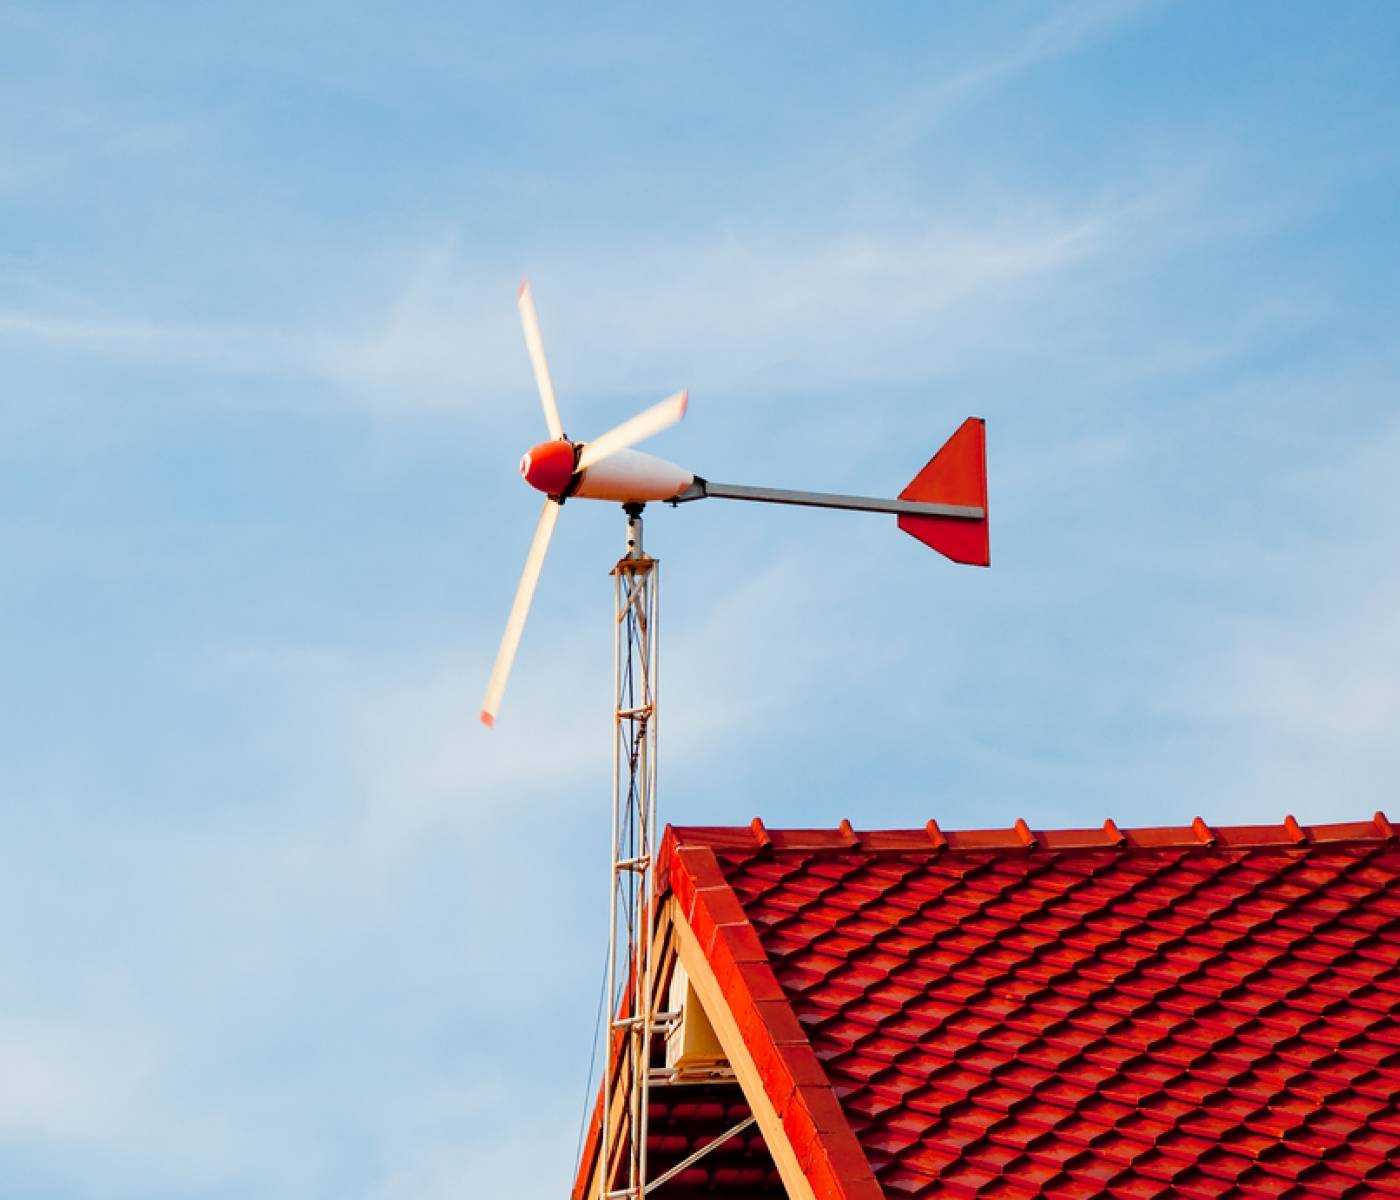 Мини-ветрогенераторы: выбираем маленький ветряной генератор для дома, принцип работы и устройство